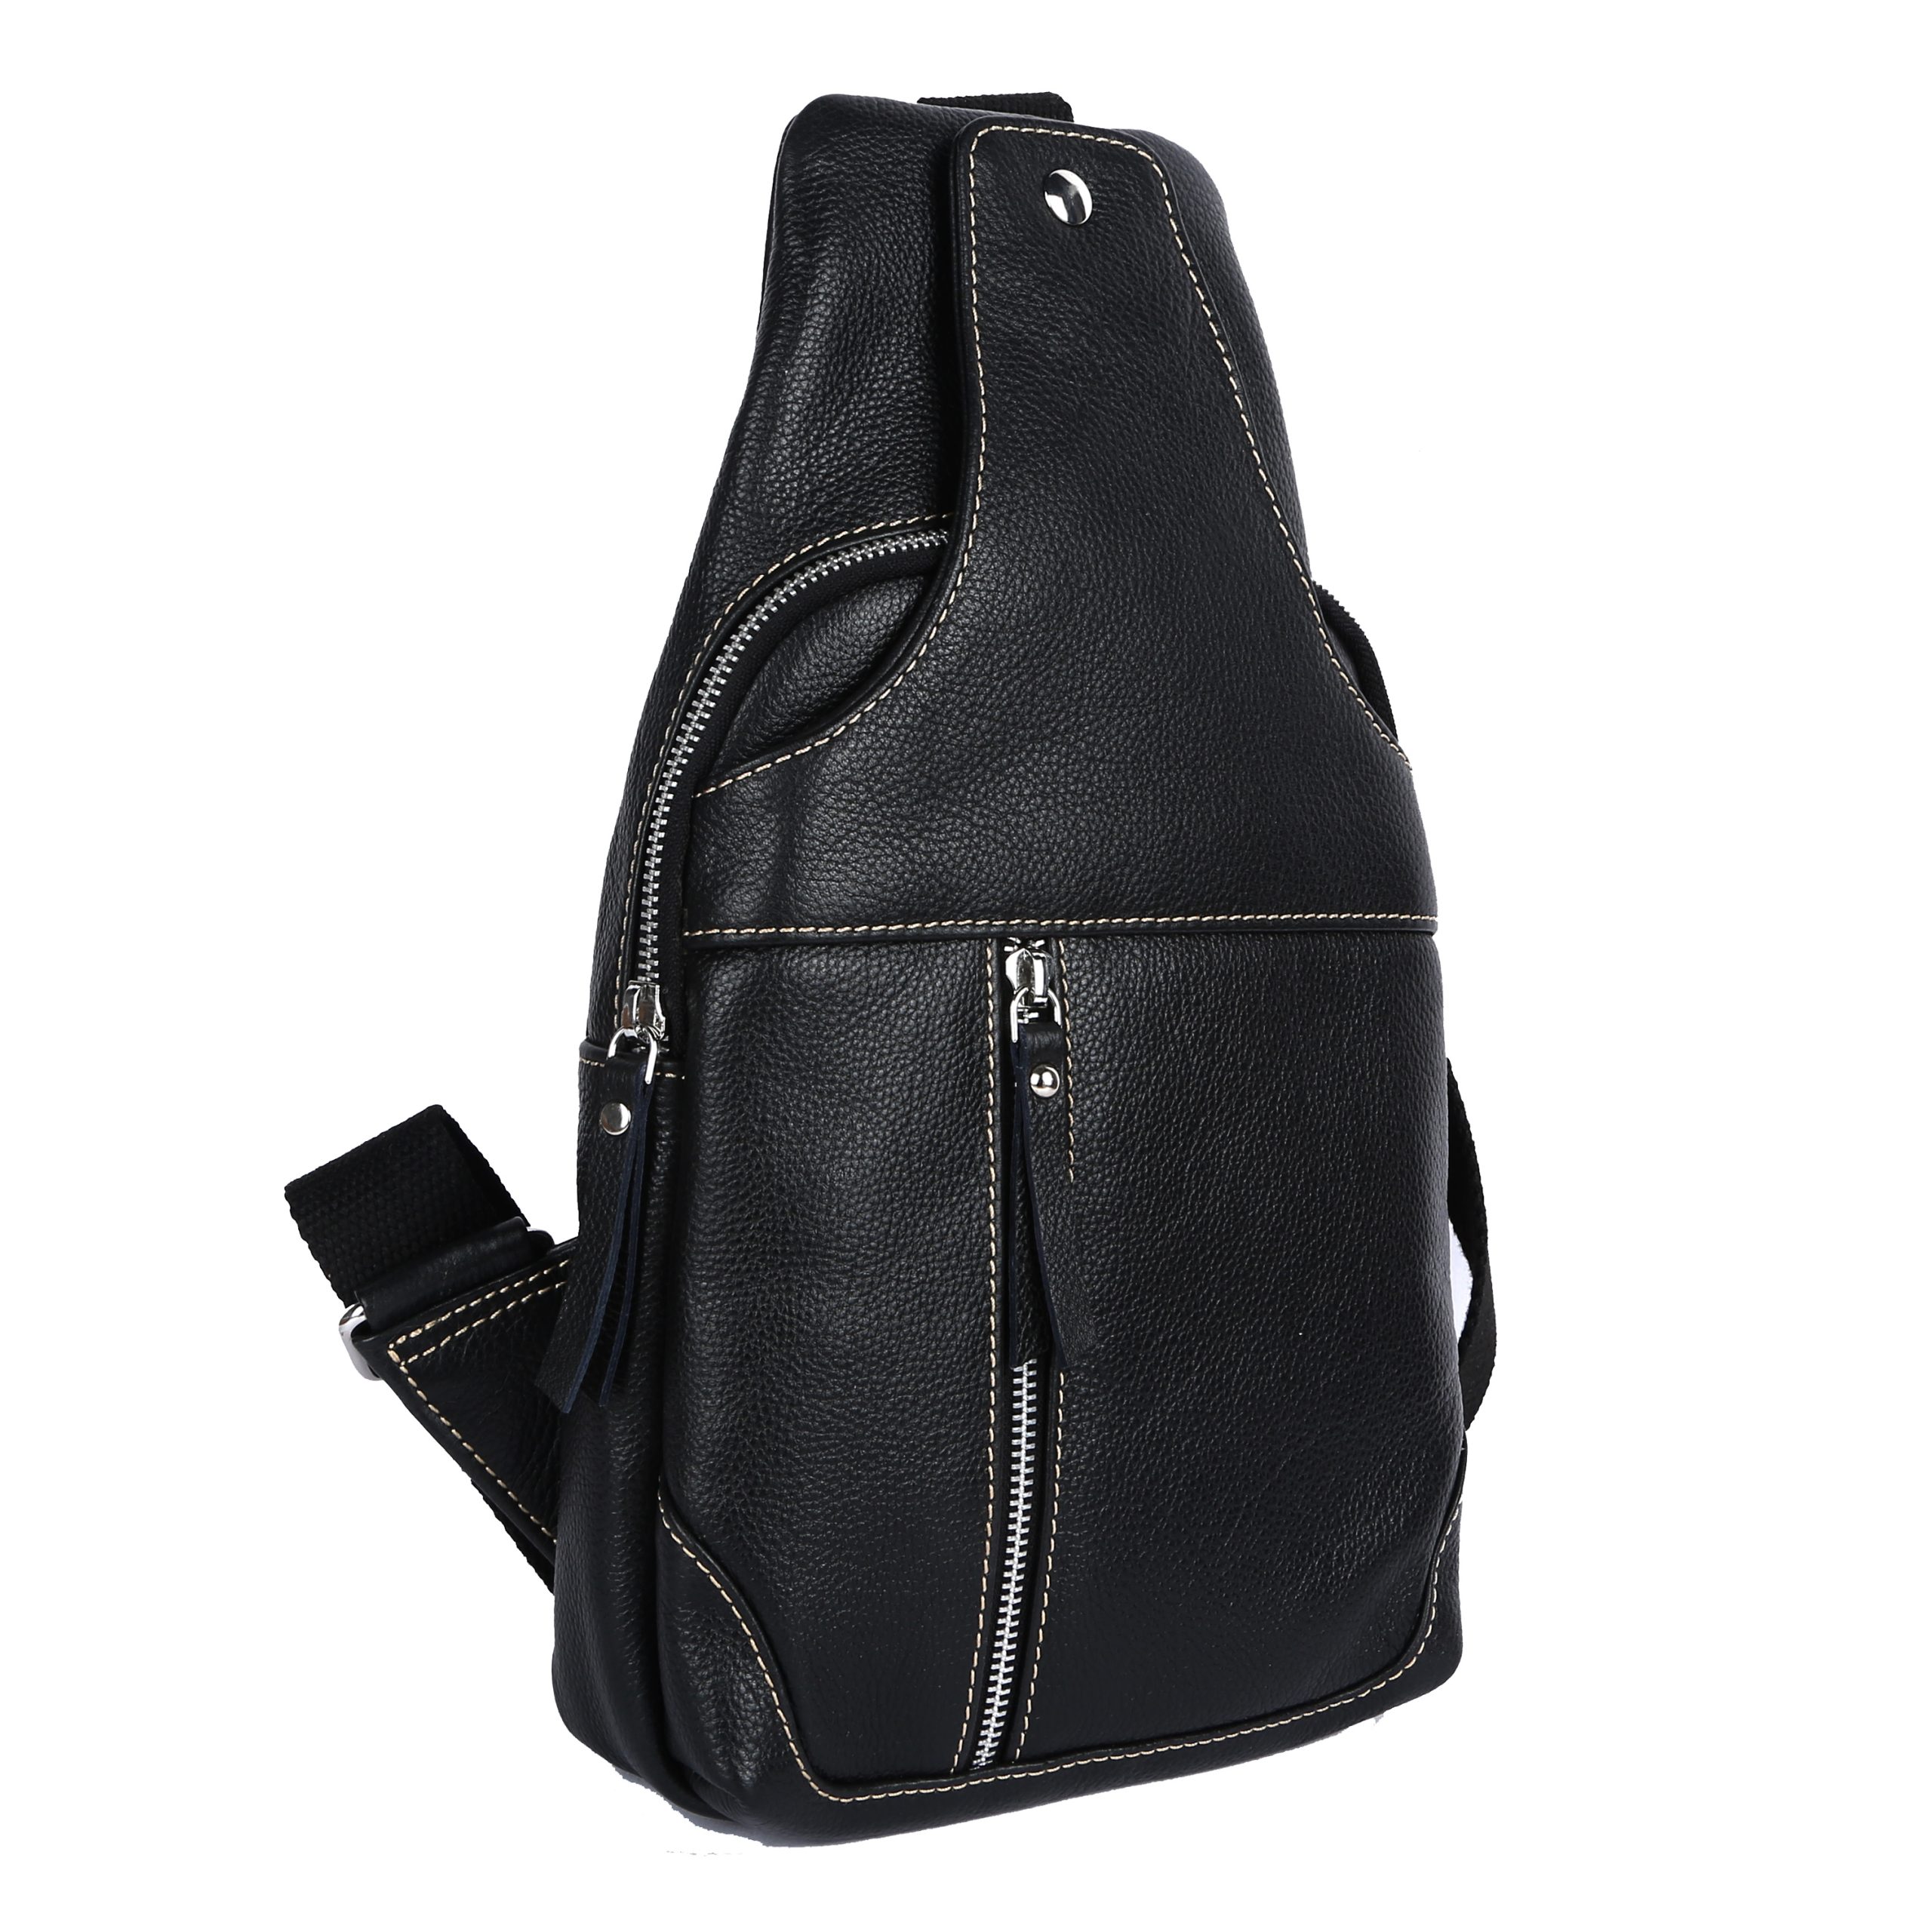 Body Bag (Bag) - Tauruslederwaren